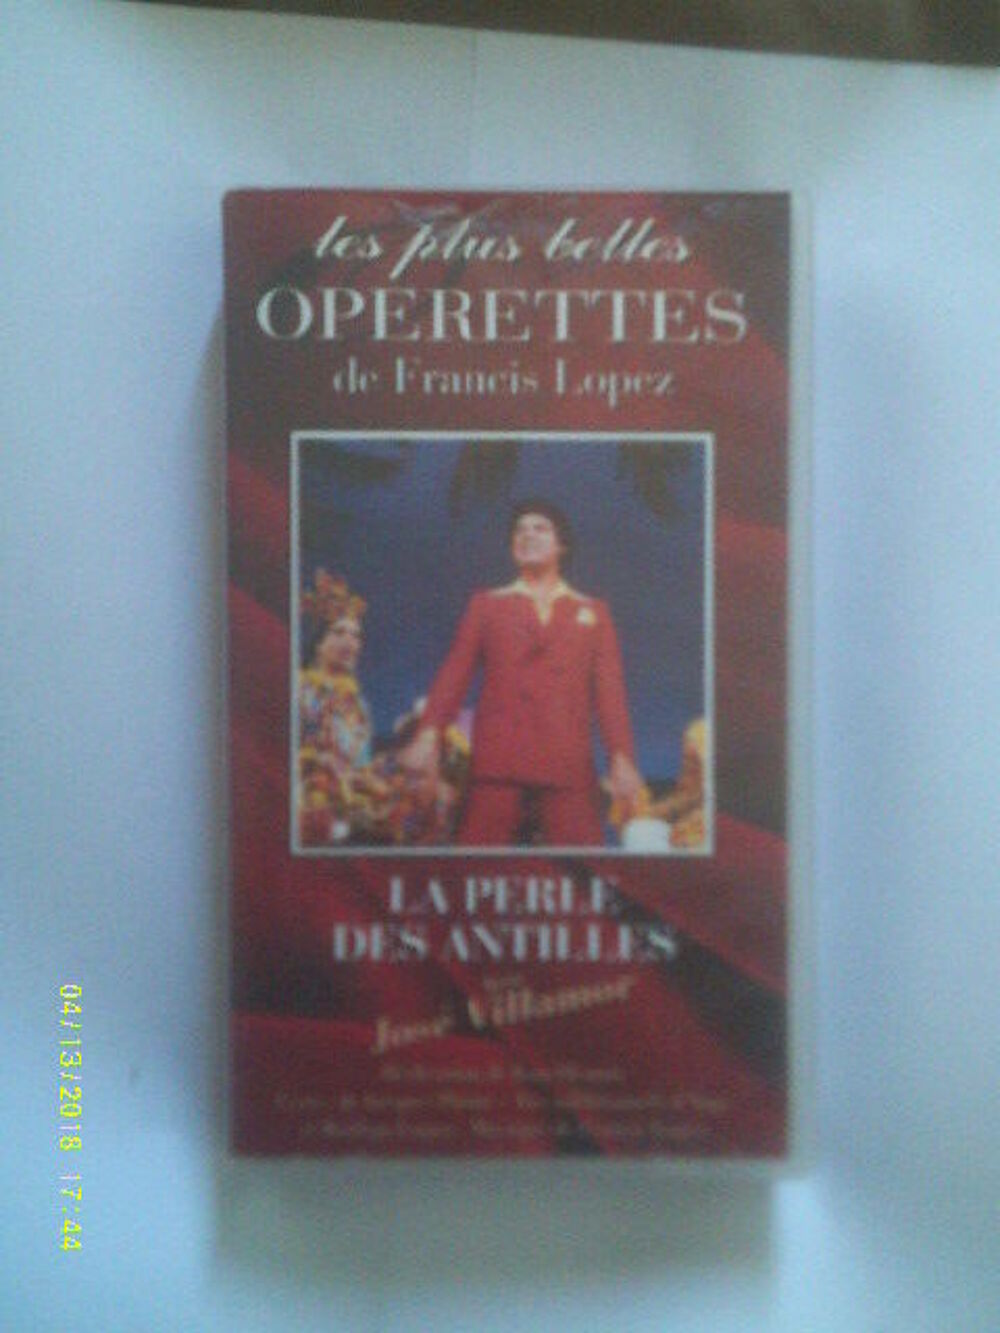 LA PERLE DES ANTILLES operette de francis Lopez) DVD et blu-ray